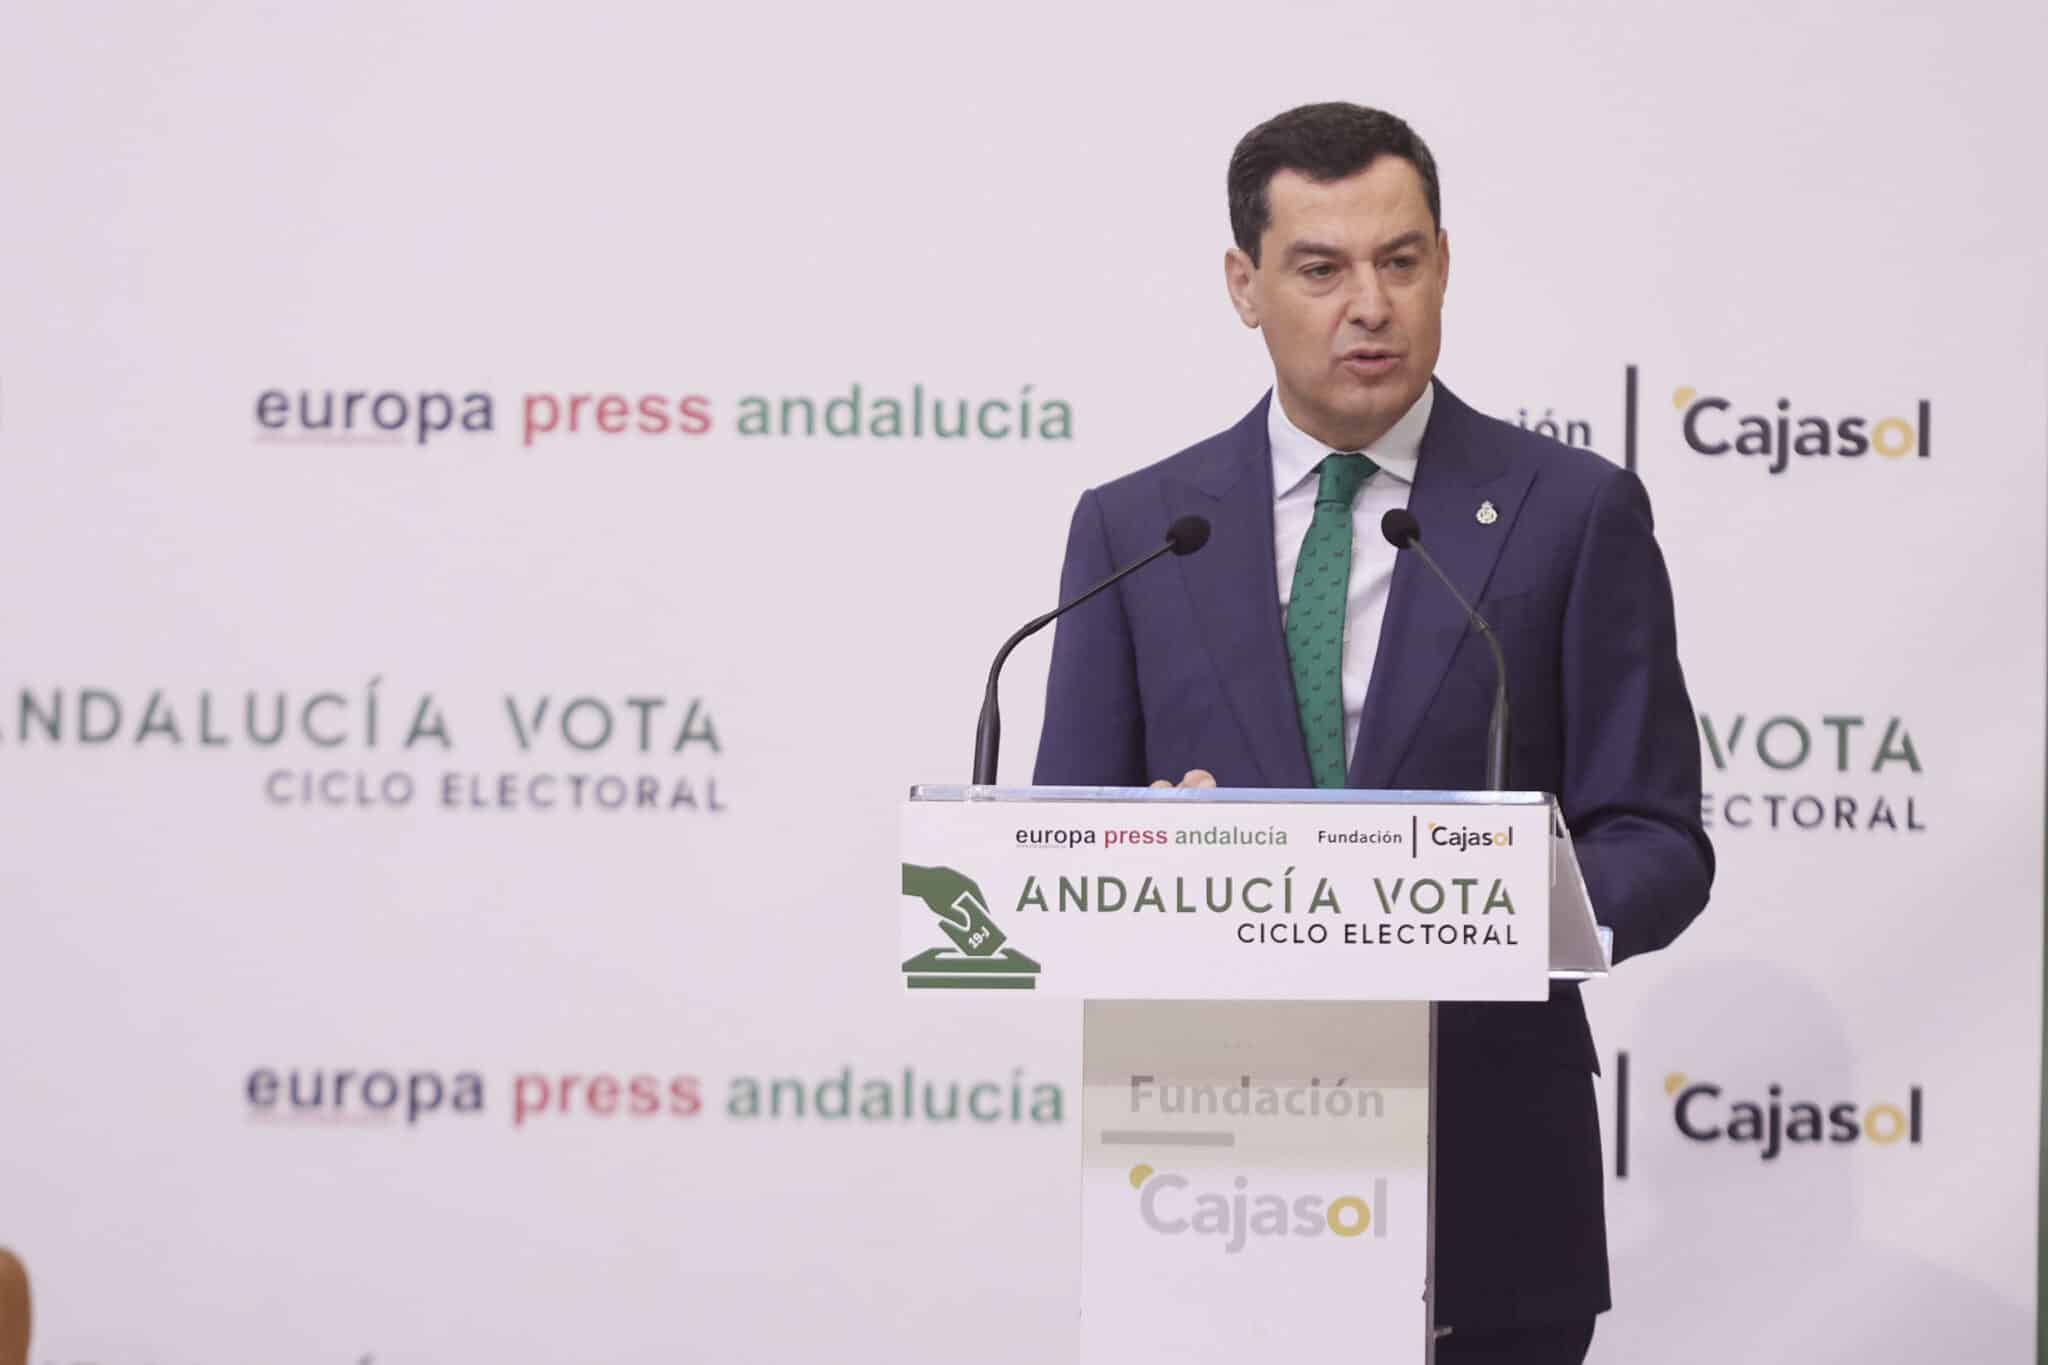 El candidato del Partido Popular a la presidencia de la Junta de Andalucía, Juanma Moreno, durante el encuentro informativo “Andalucía Vota” Ciclo electoral en la Fundación Cajasol.